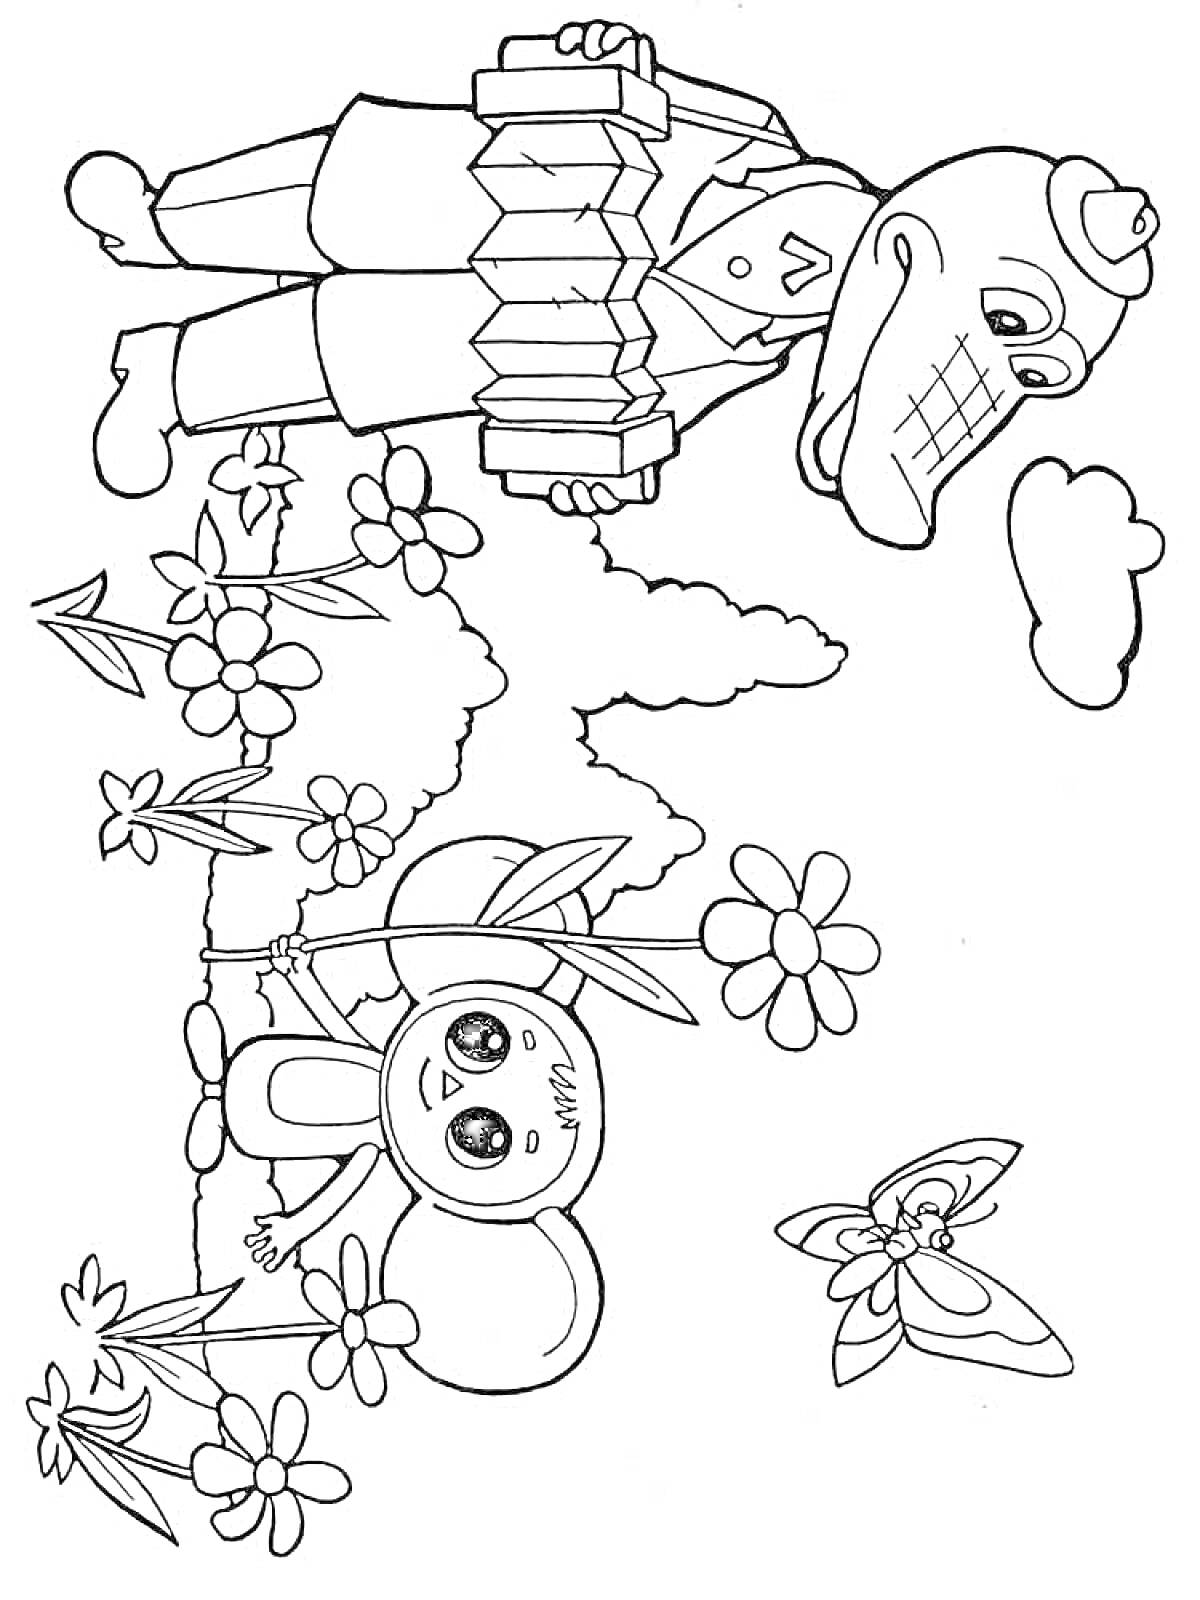 Раскраска Чебурашка и крокодил Гена на природе с цветами и бабочкой